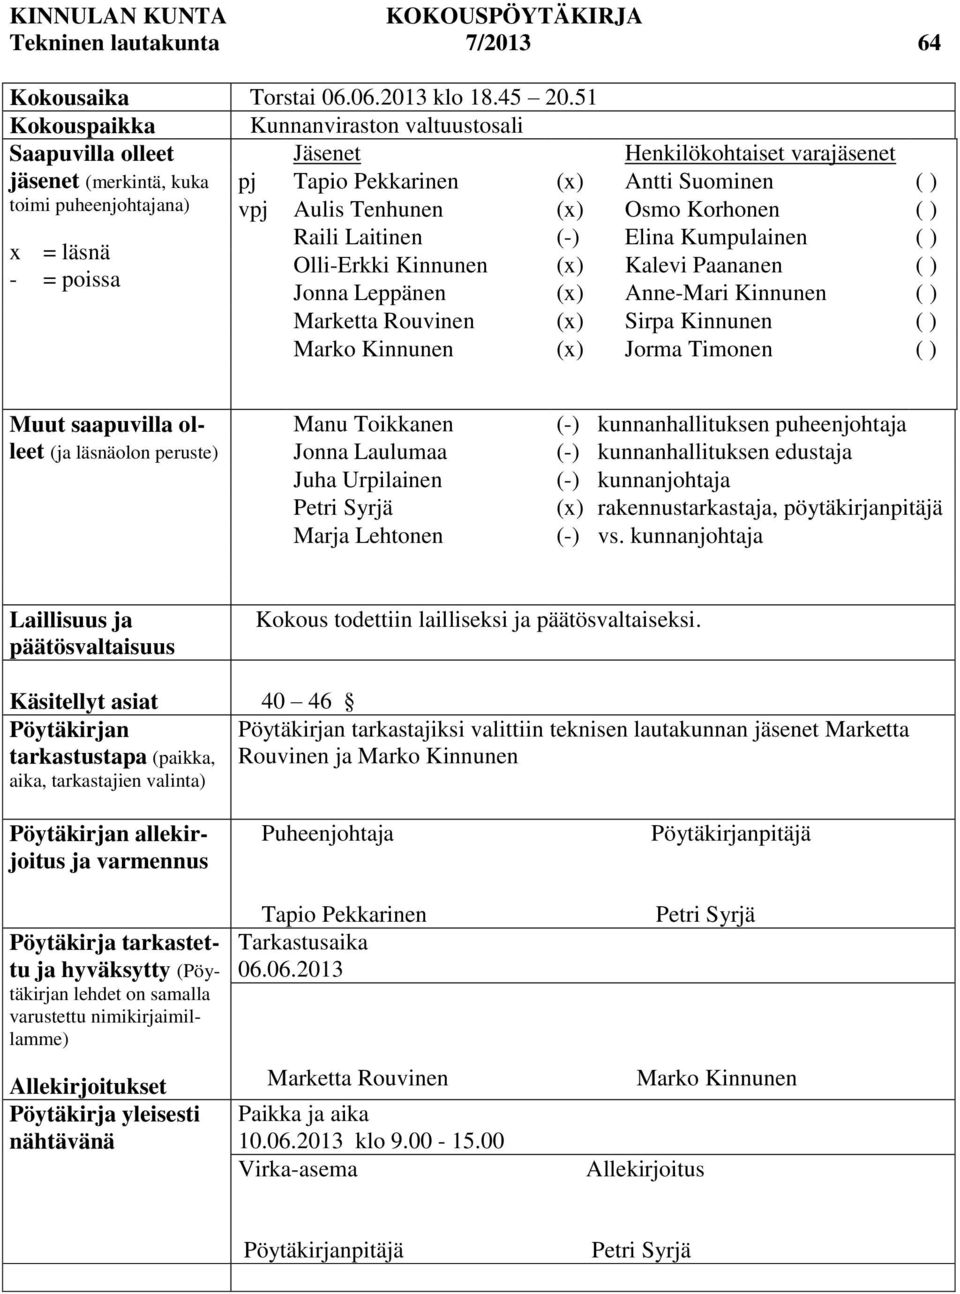 Suominen ( ) vpj Aulis Tenhunen (x) Osmo Korhonen ( ) Raili Laitinen (-) Elina Kumpulainen ( ) Olli-Erkki Kinnunen (x) Kalevi Paananen ( ) Jonna Leppänen (x) Anne-Mari Kinnunen ( ) Marketta Rouvinen